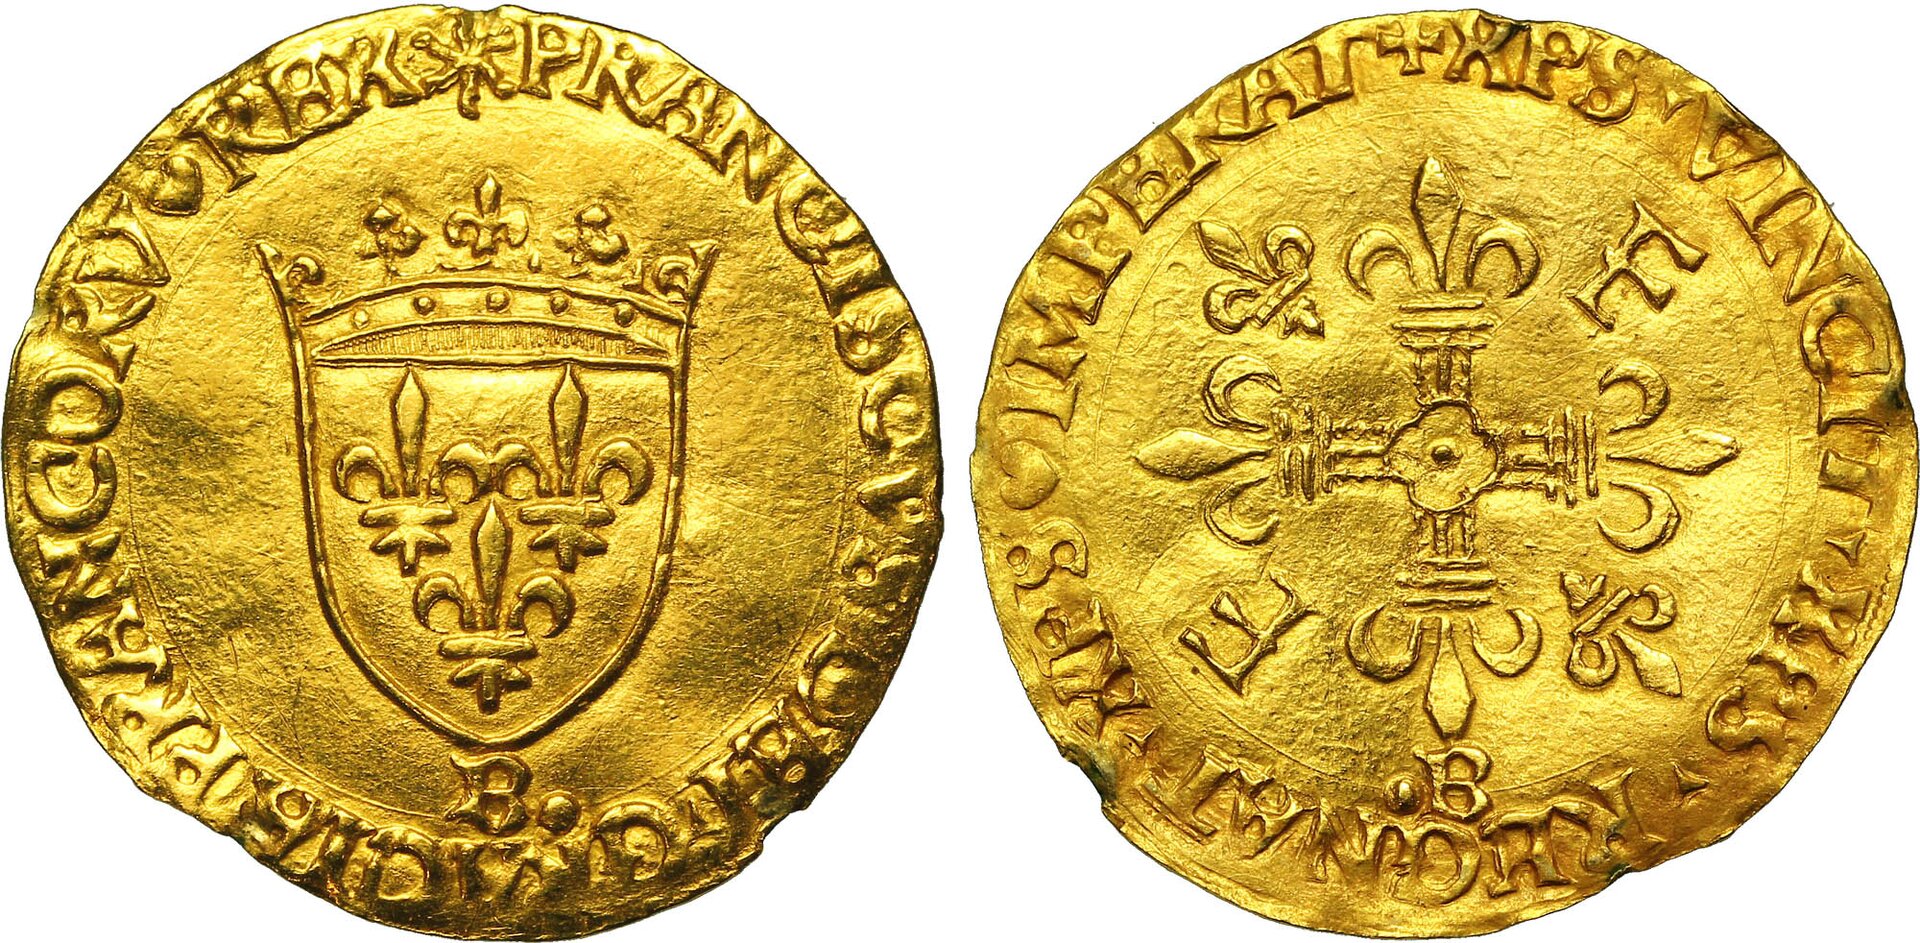 Francuska złota moneta – écu (denier d’or a l’ecu, w skrócie Ecu d’or, czyli złota tarcza). Ostatnią monetę wybito w 1793 r. Źródło: cgb.fr, Francuska złota moneta – écu (denier d’or a l’ecu, w skrócie Ecu d’or, czyli złota tarcza). Ostatnią monetę wybito w 1793 r. , licencja: CC BY-SA 3.0.